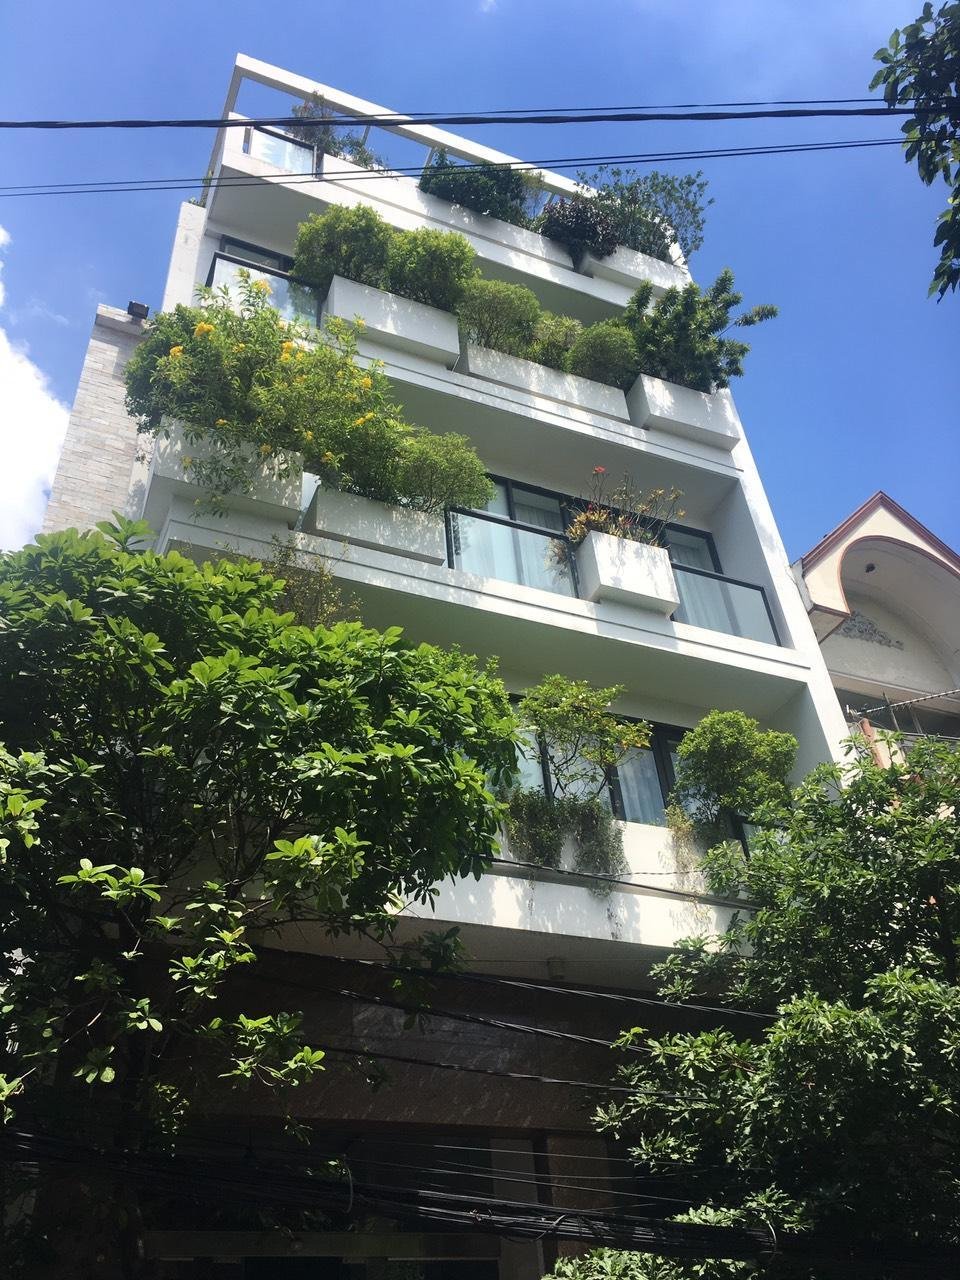 Bán nhà 6 tầng đẹp (có thang máy) mặt tiền Bùi Hữu Nghĩa, quận Sơn Trà. 64m2 giá 9,2 tỷ